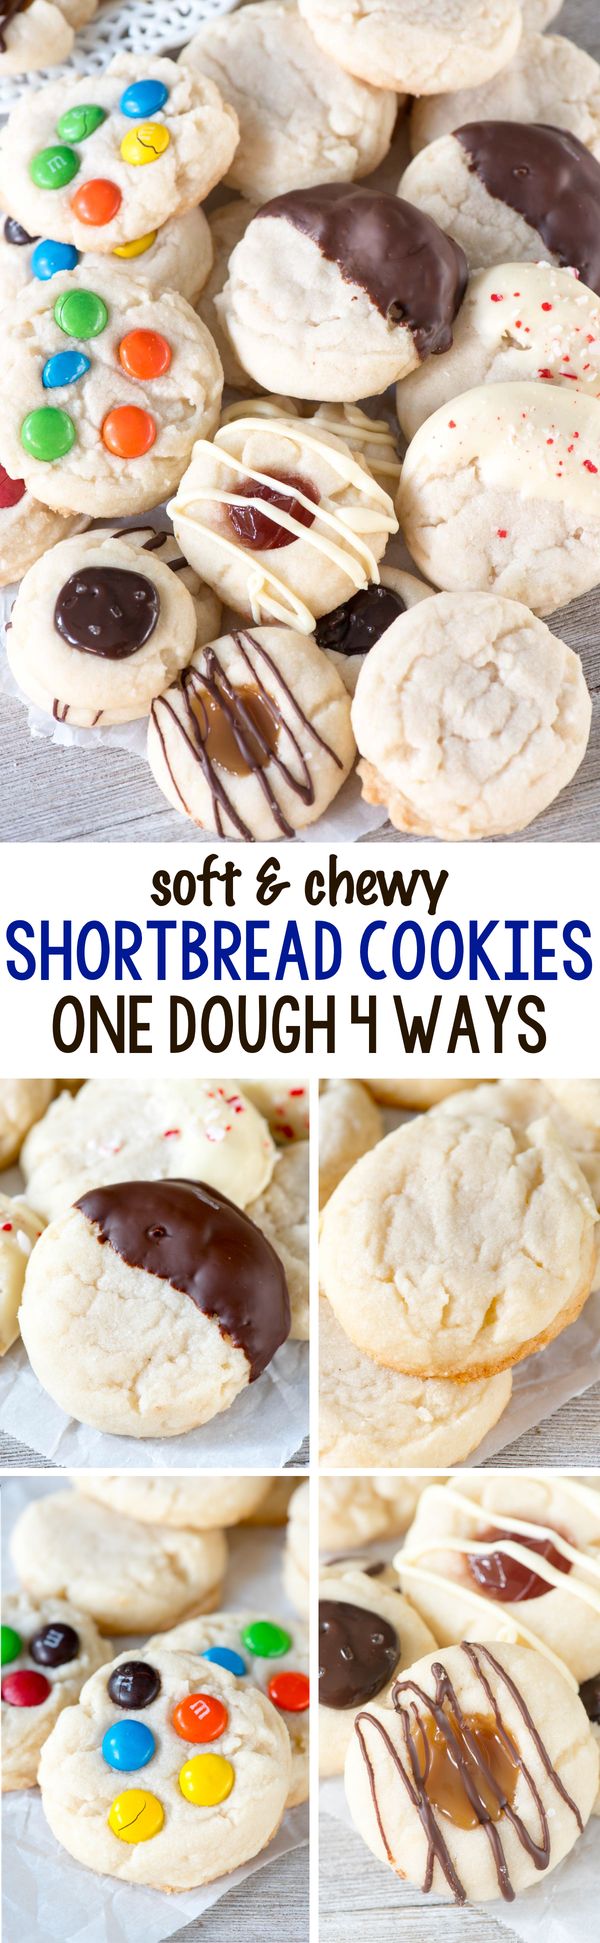 Shortbread Cookies (one dough 4 ways